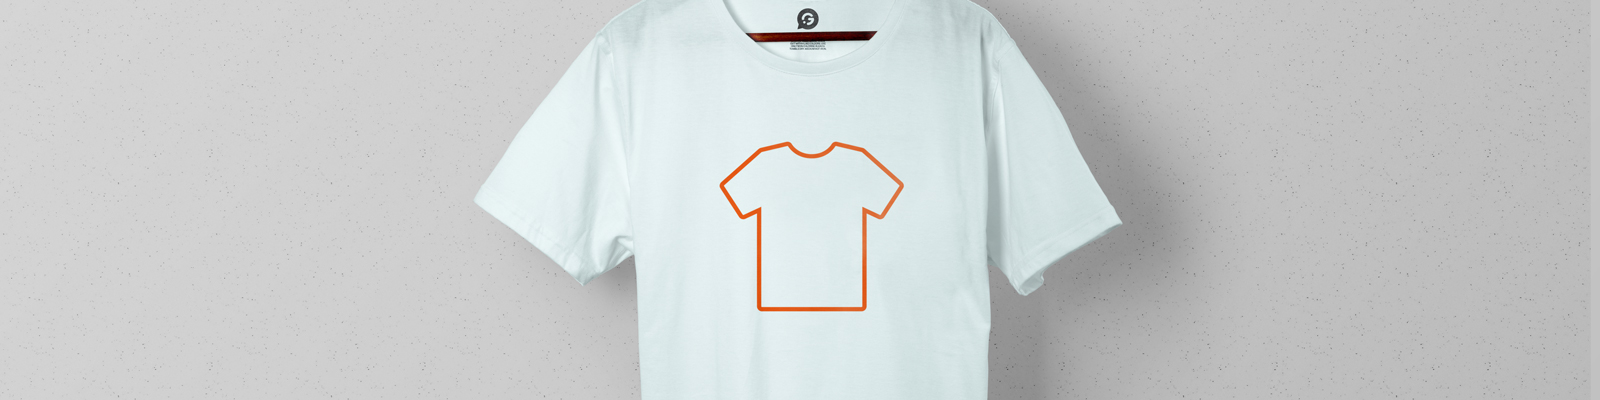 Merchandising à l'aide de t-shirts personnalisés - Garment Printing